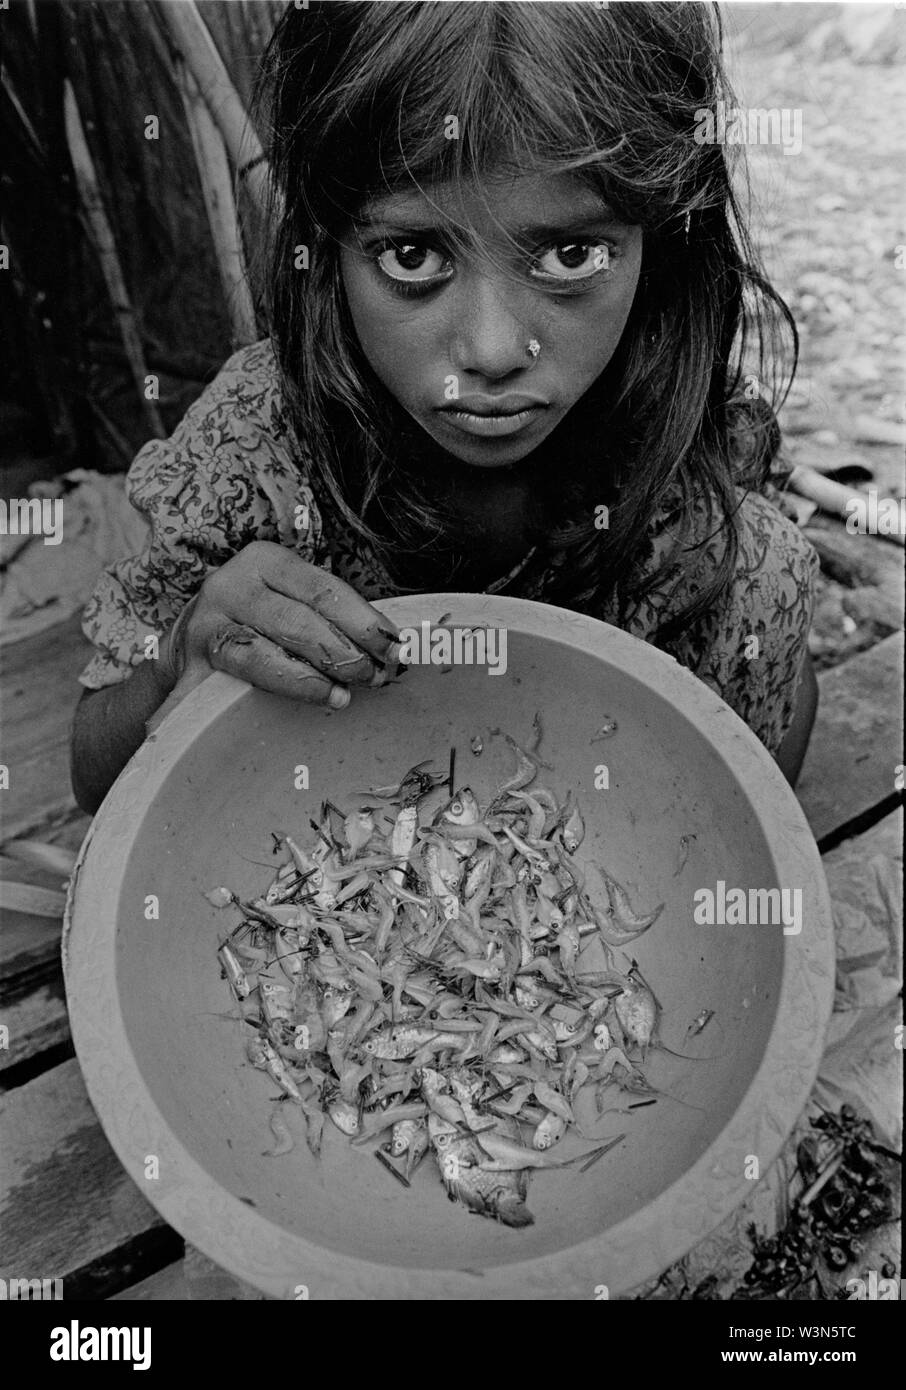 Ein junges Mädchen hält ein irdenes Gefäß, das einige Fische, dass das Abendessen für ihre Familie sein wird. Bau Basar Slum, auf der die Röcke von Dhaka. Bangladesch. Stockfoto